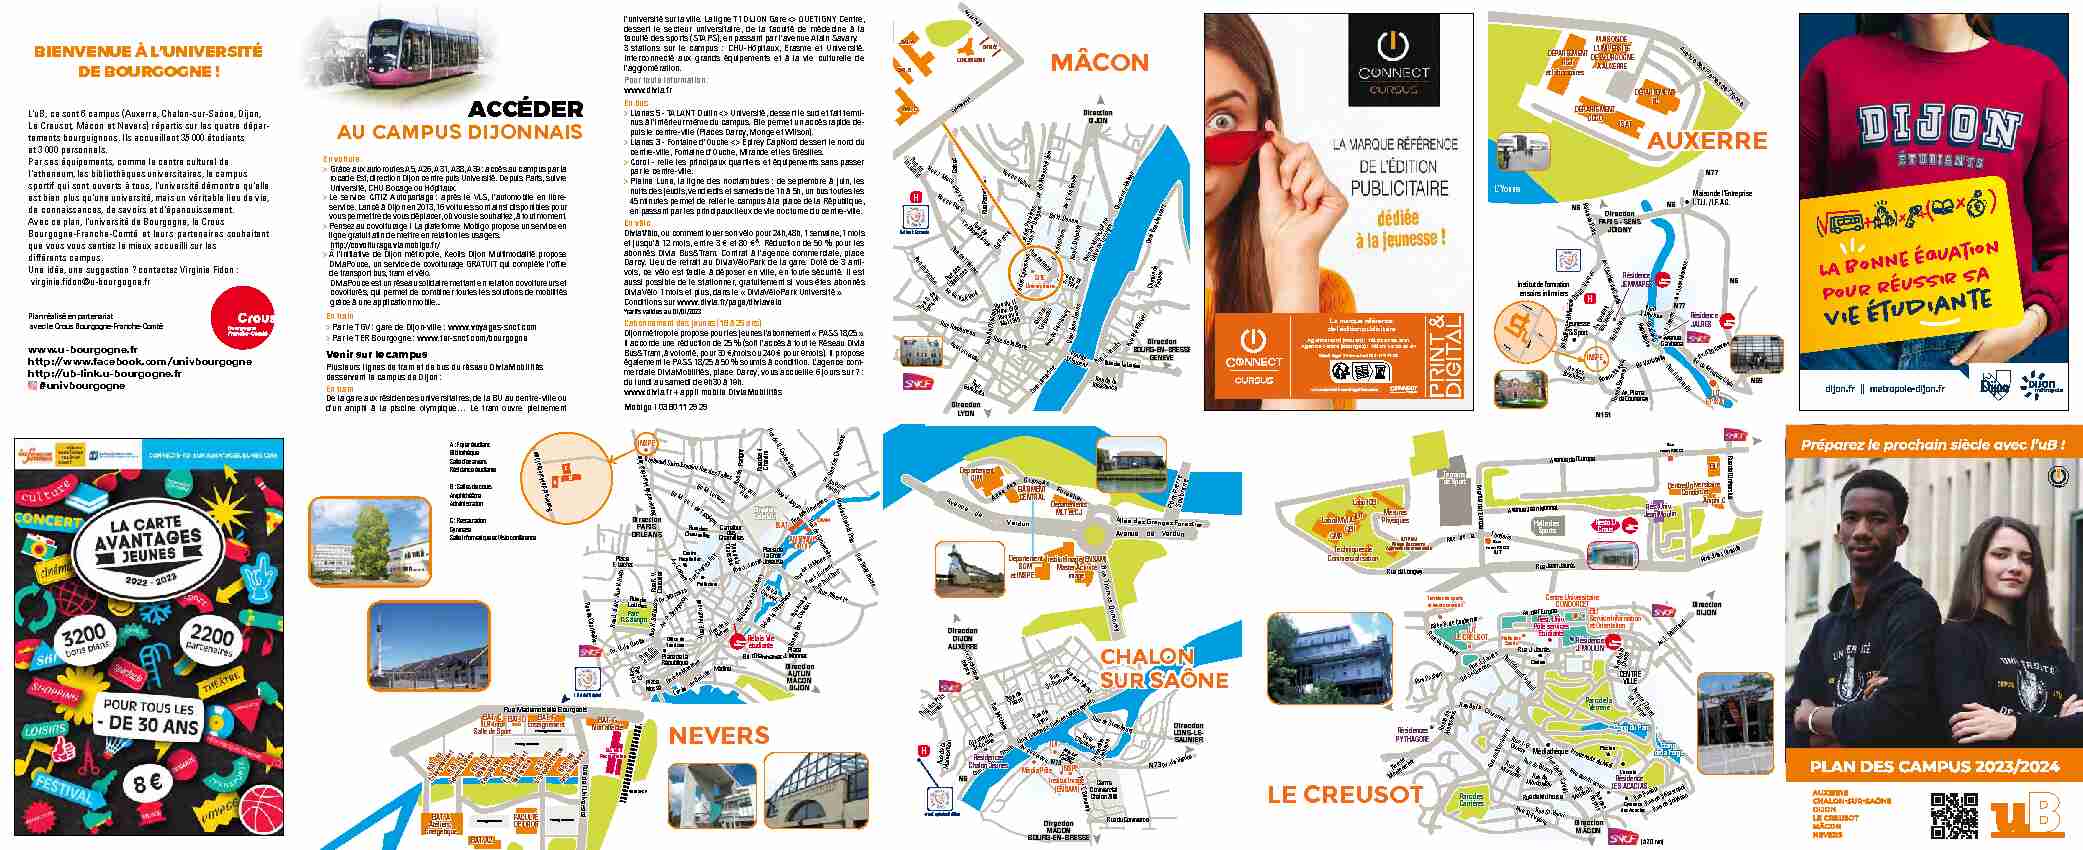 Plan des campus de luB (PDF)